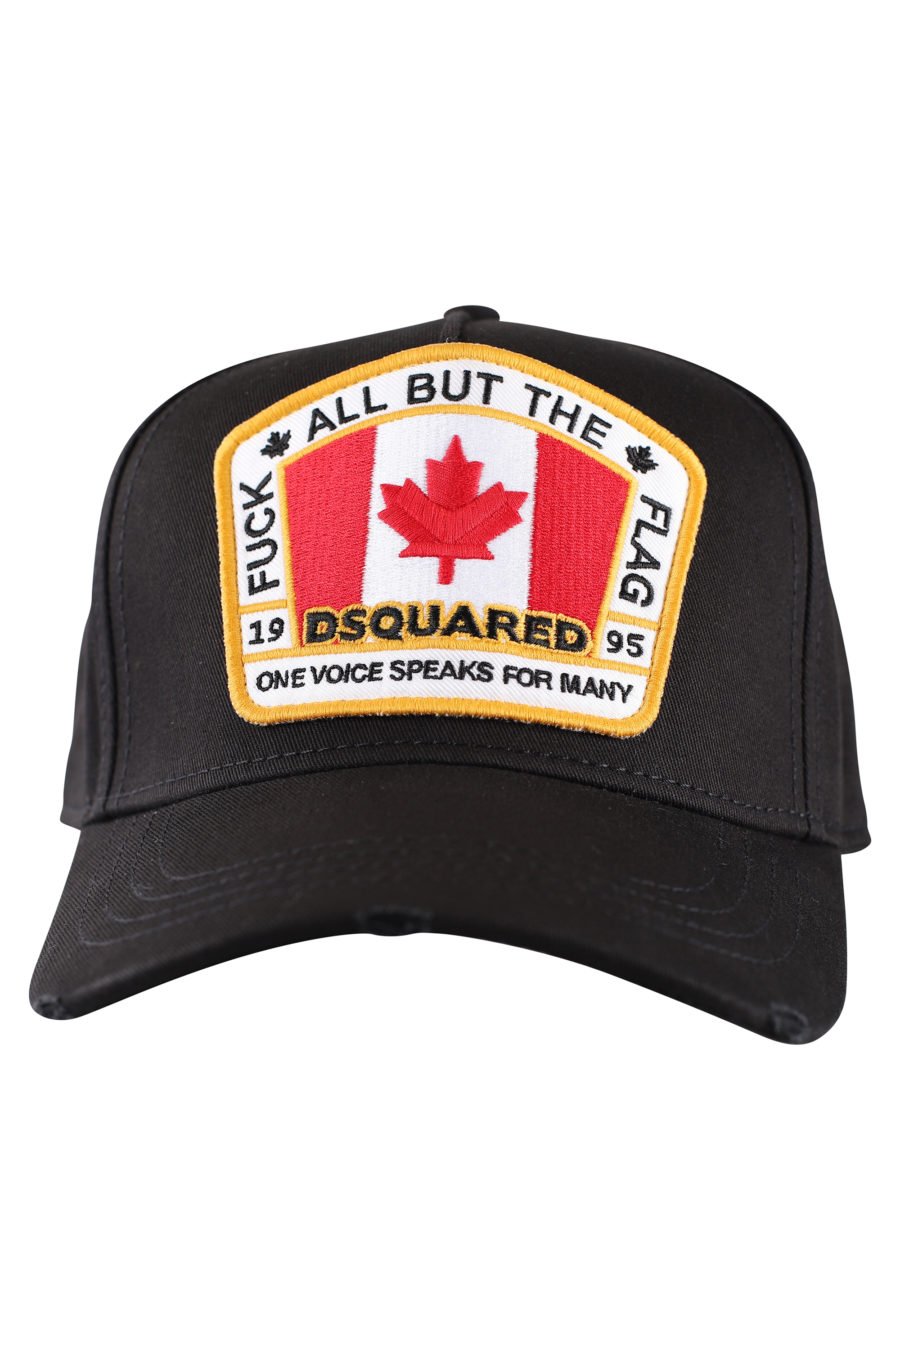 Gorra negra con logo en parche de bandera Canadá - IMG 9996